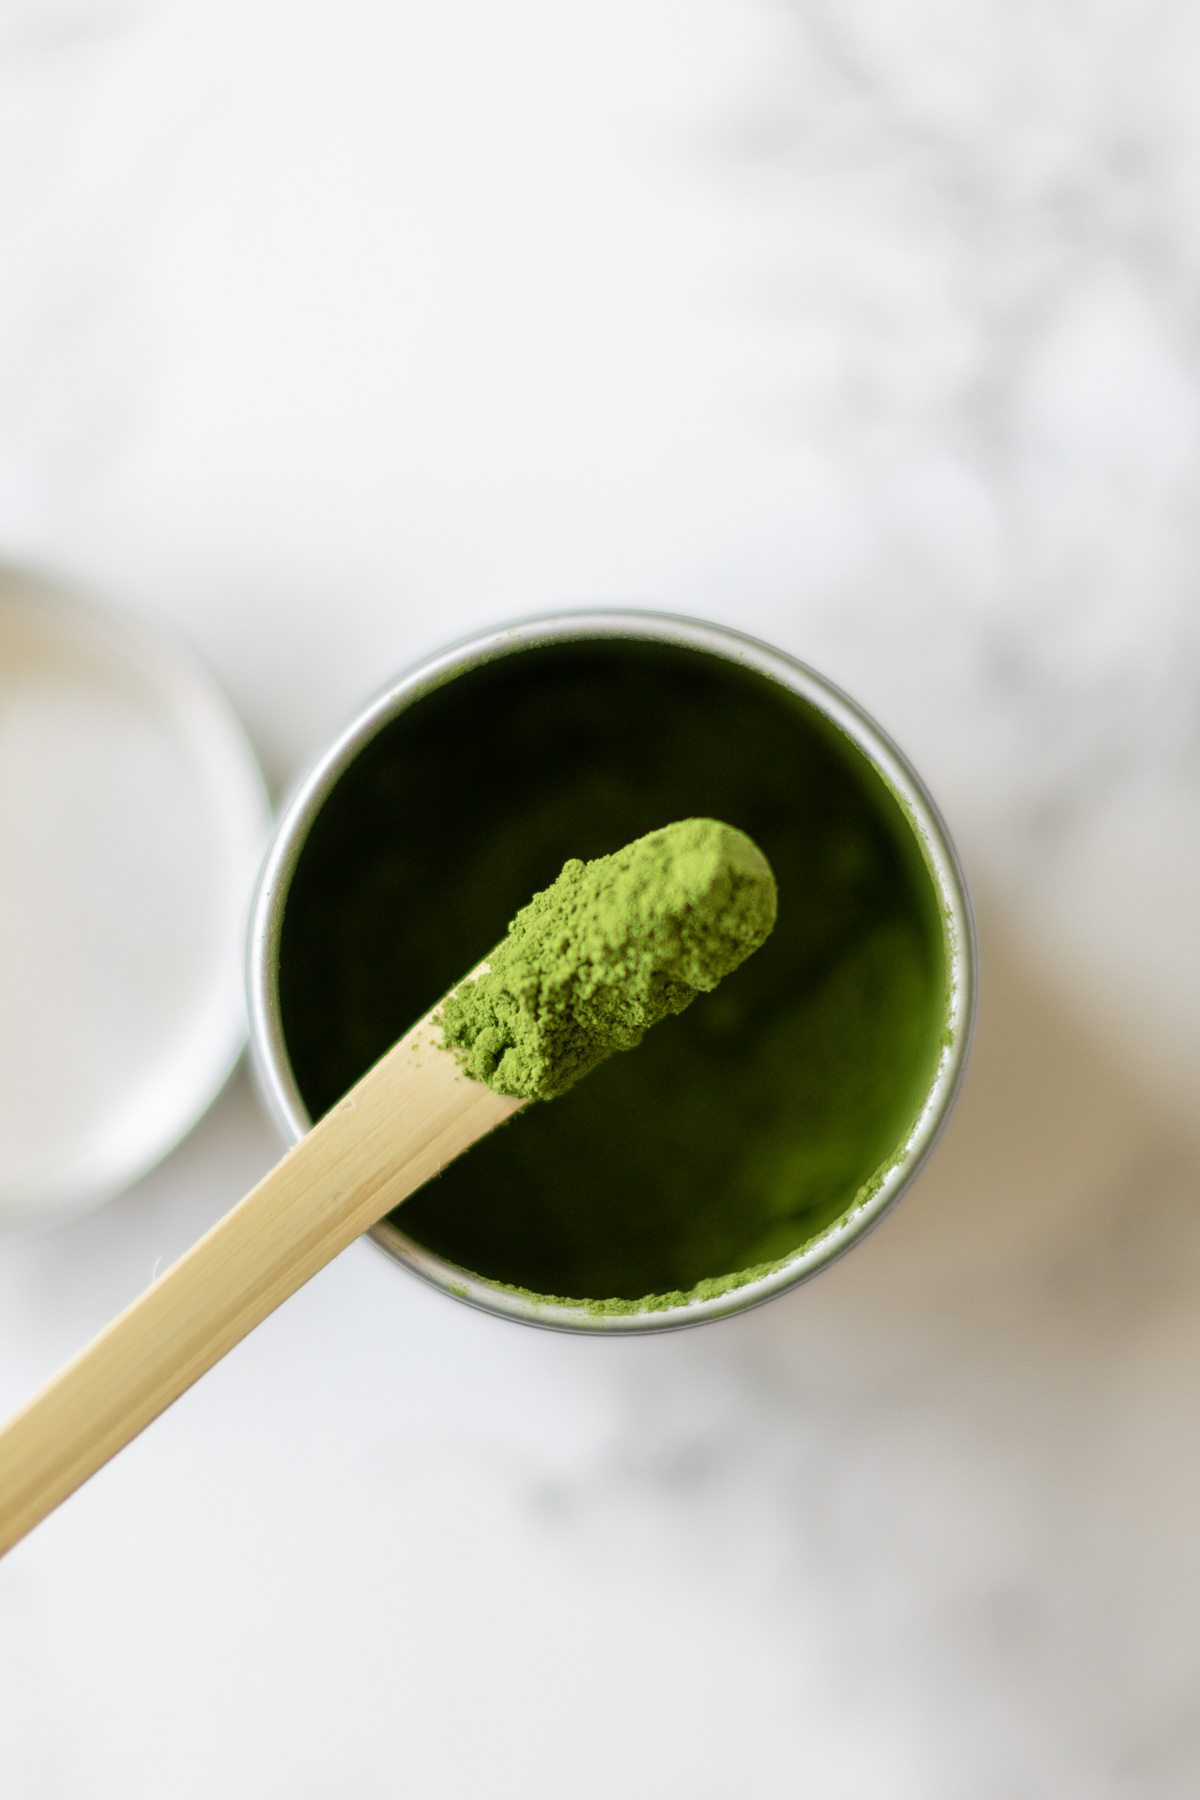 a pot of matcha green tea powder